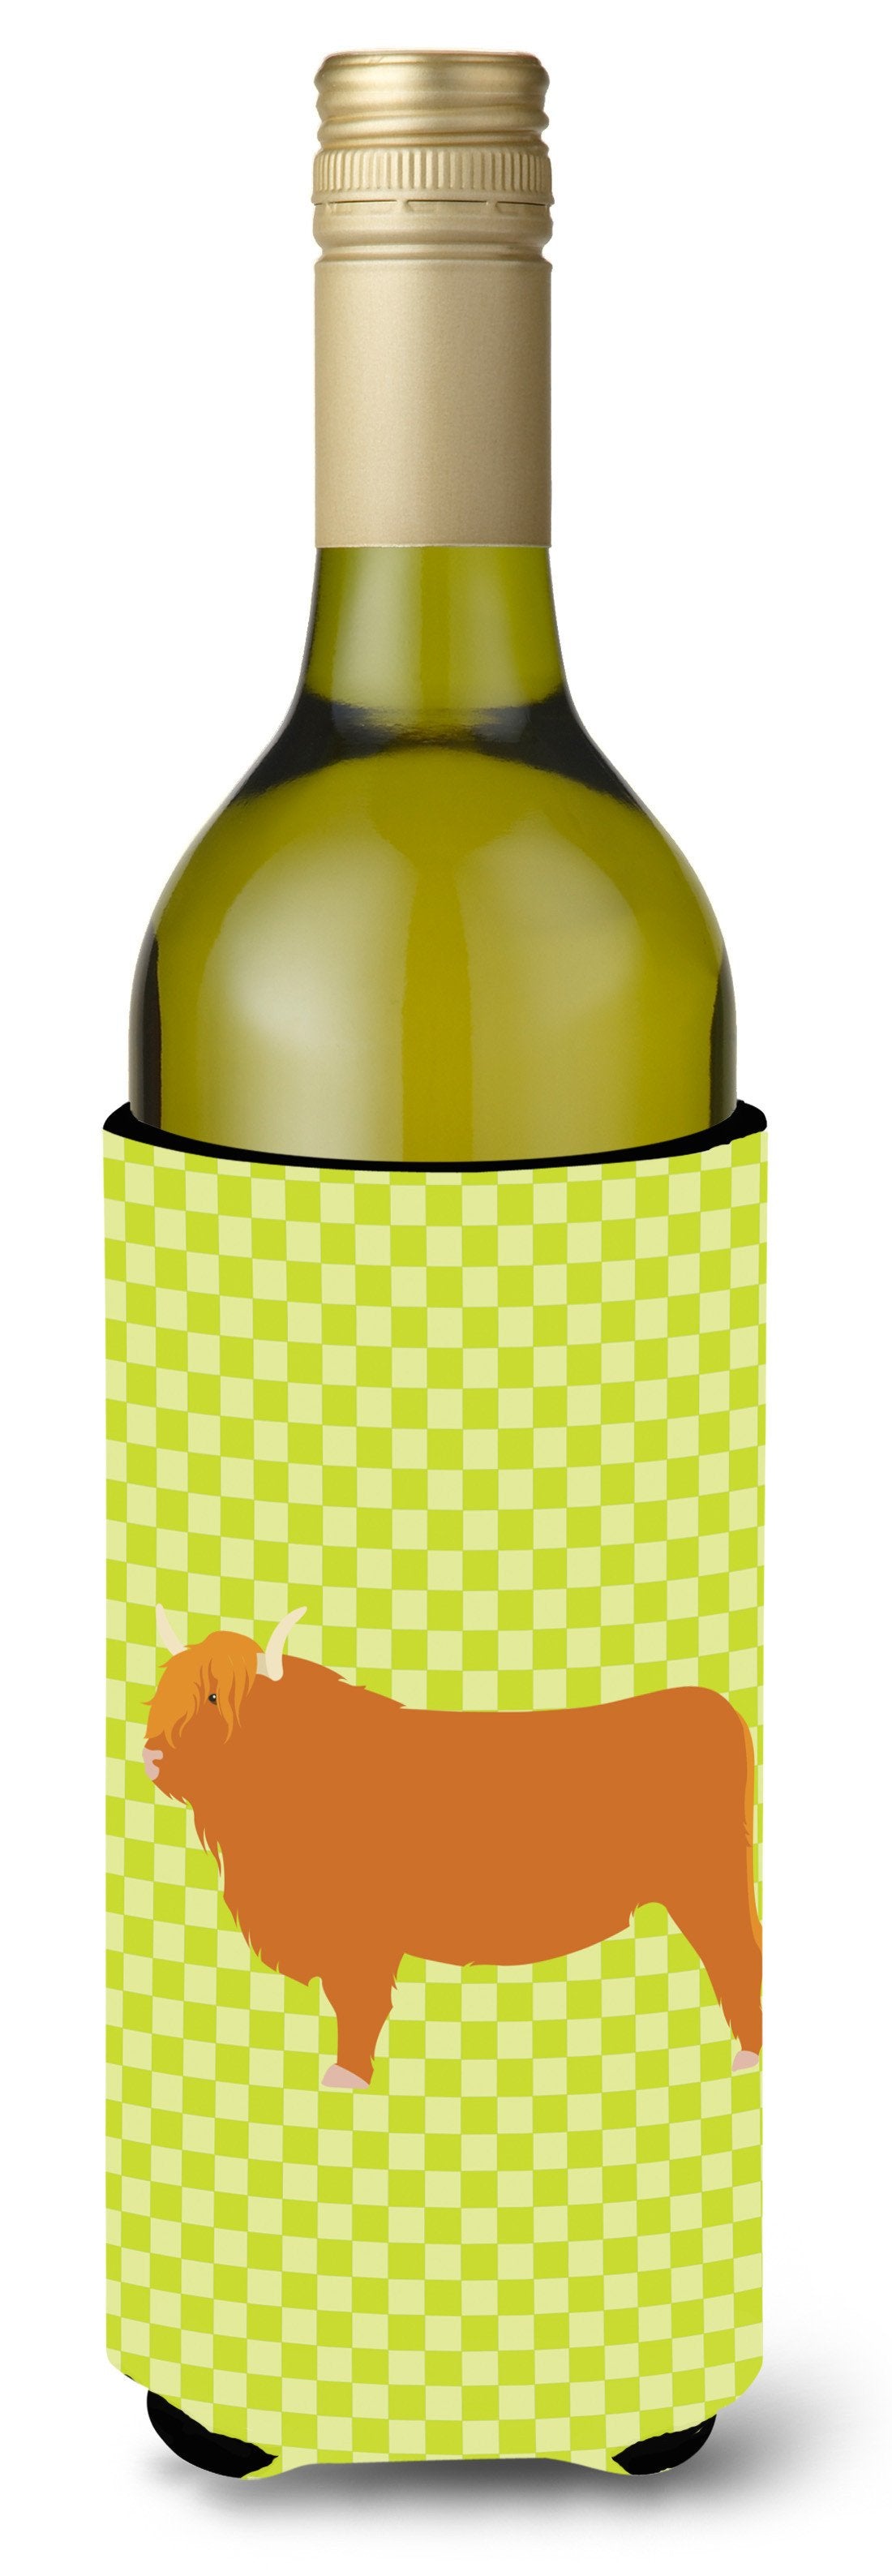 Highland Cow Green Wine Bottle Beverge Insulator Hugger BB7646LITERK by Caroline's Treasures